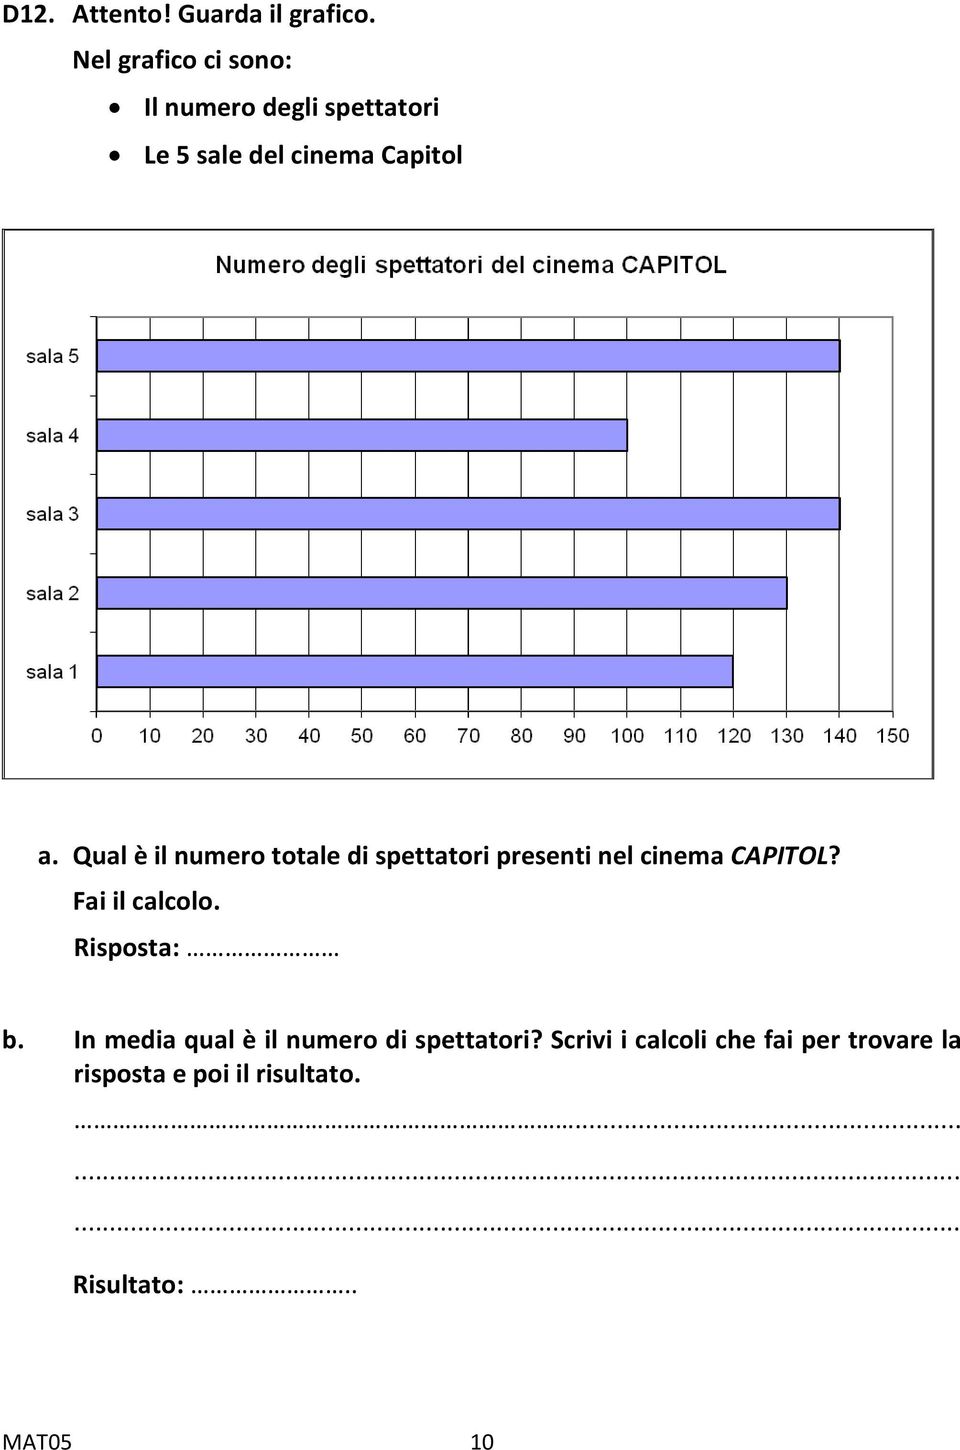 Qual è il numero totale di spettatori presenti nel cinema CAPITOL? Fai il calcolo.